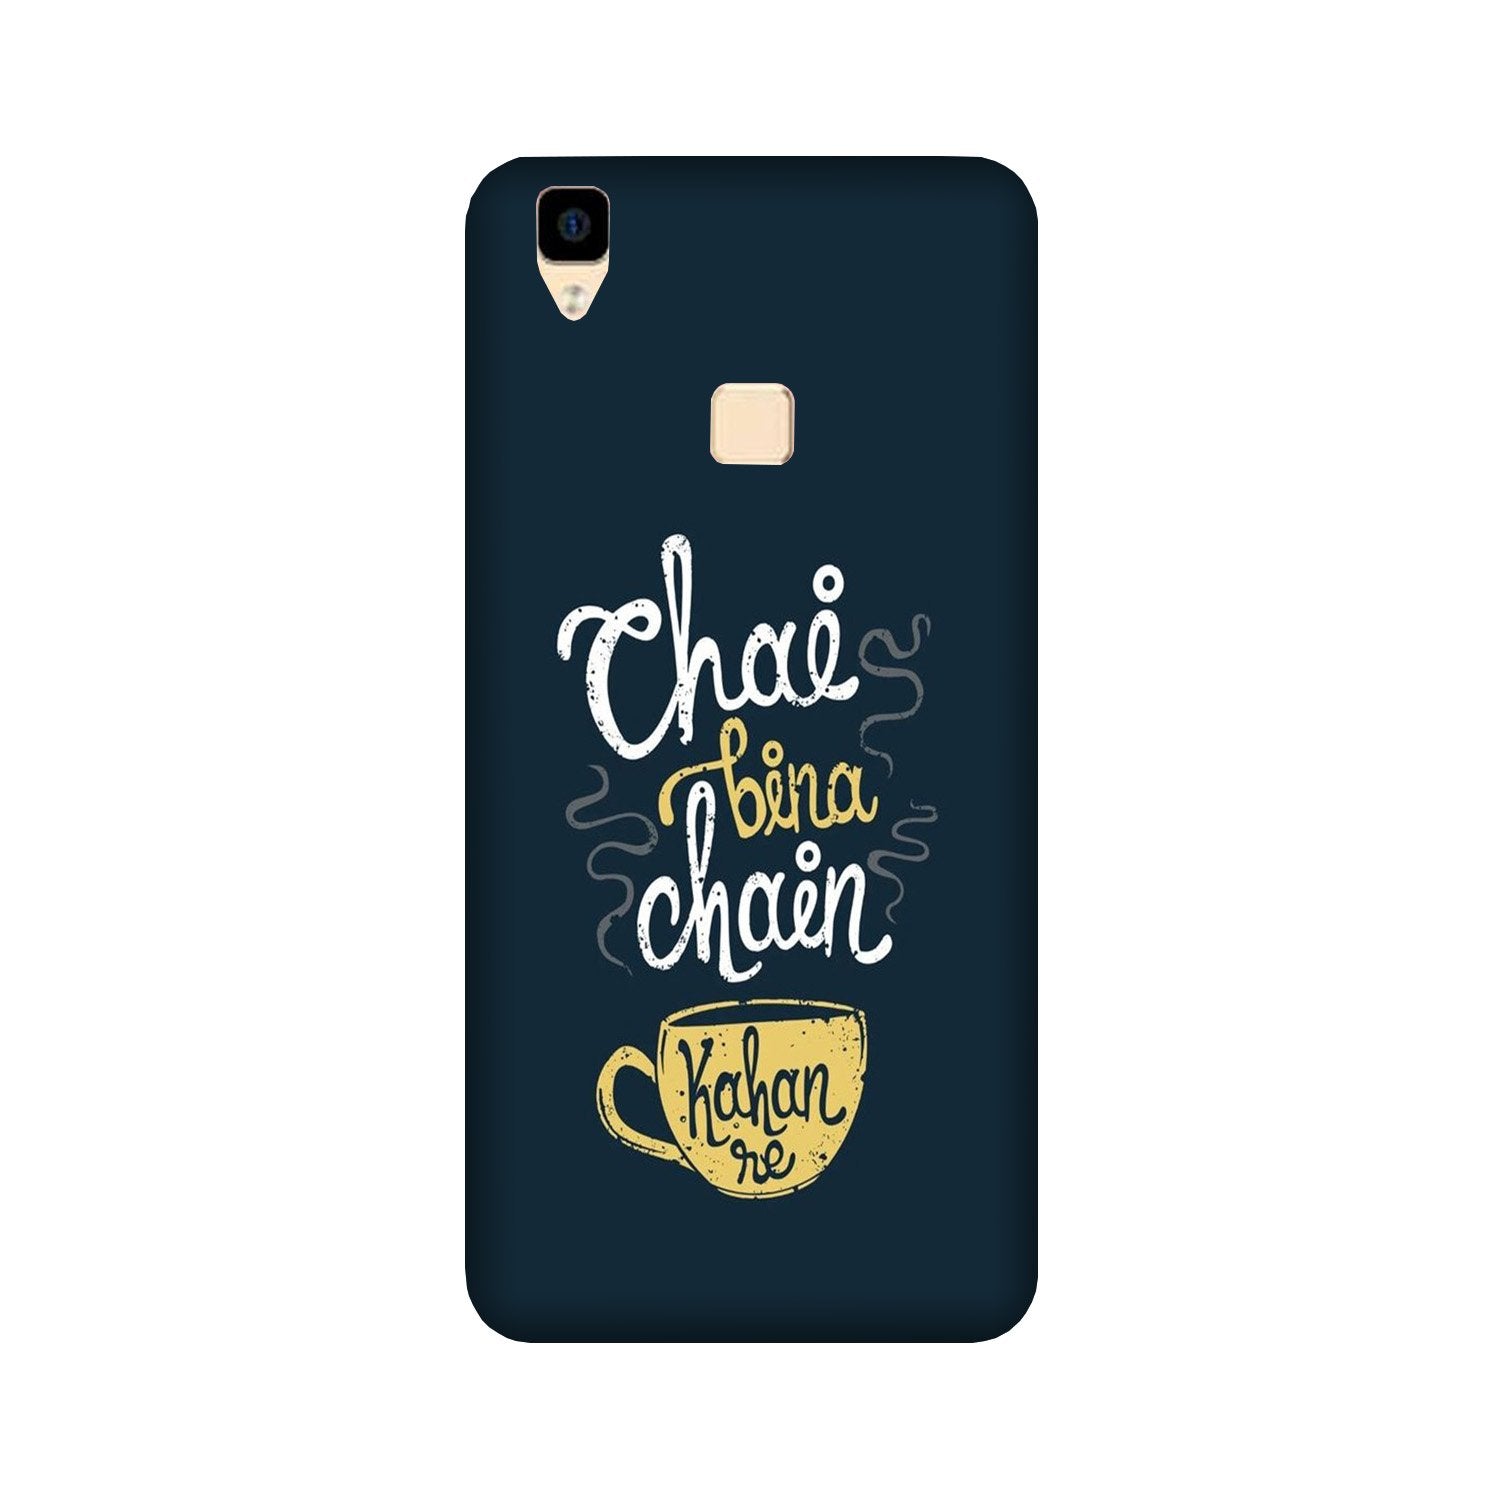 Chai Bina Chain Kahan Case for Vivo V3 Max  (Design - 144)